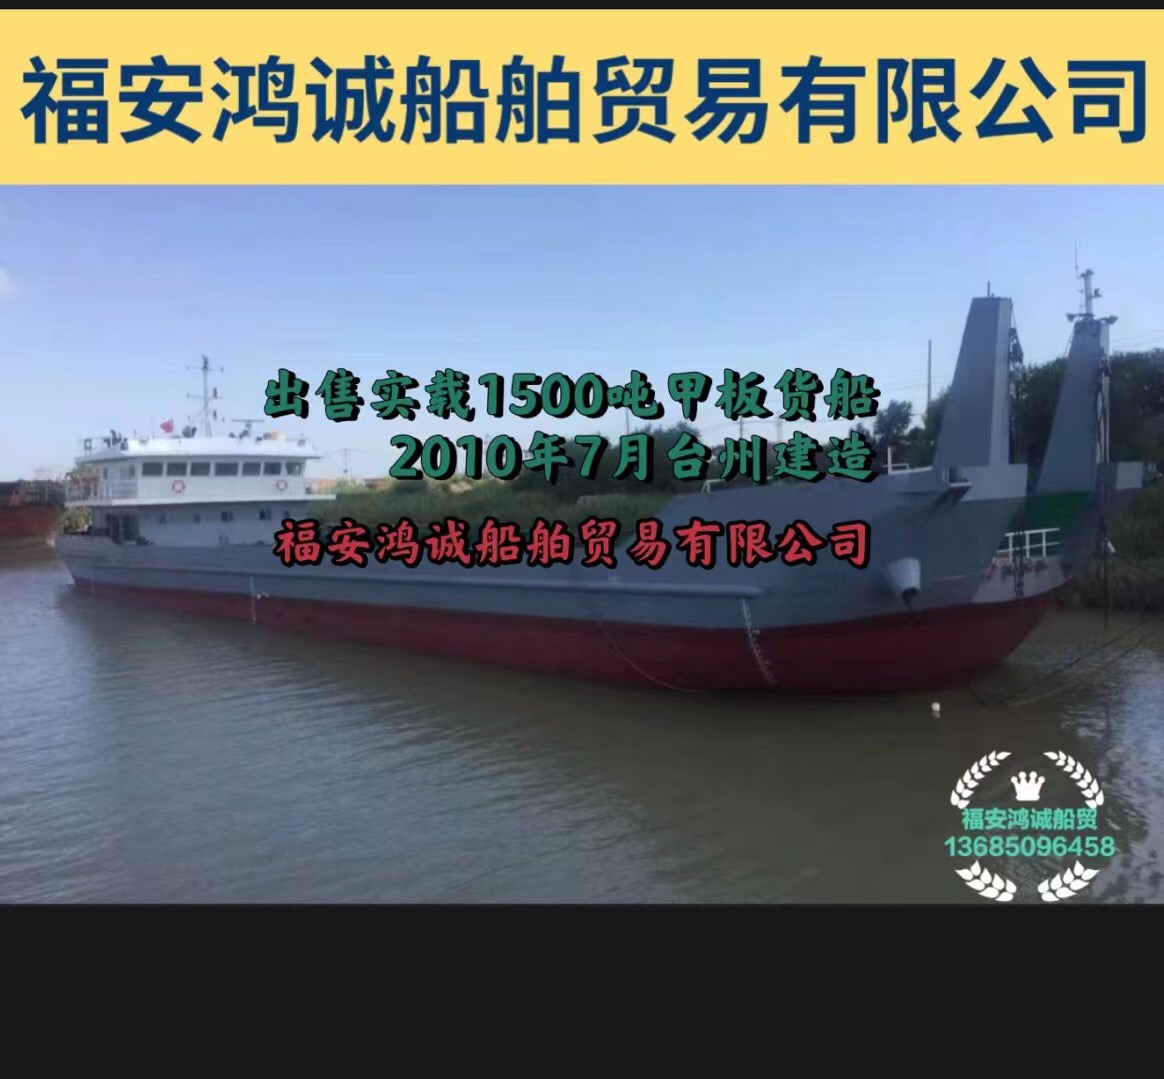 出售实载1500吨后驾驶室/甲板货船： 2010年7月台州建造/